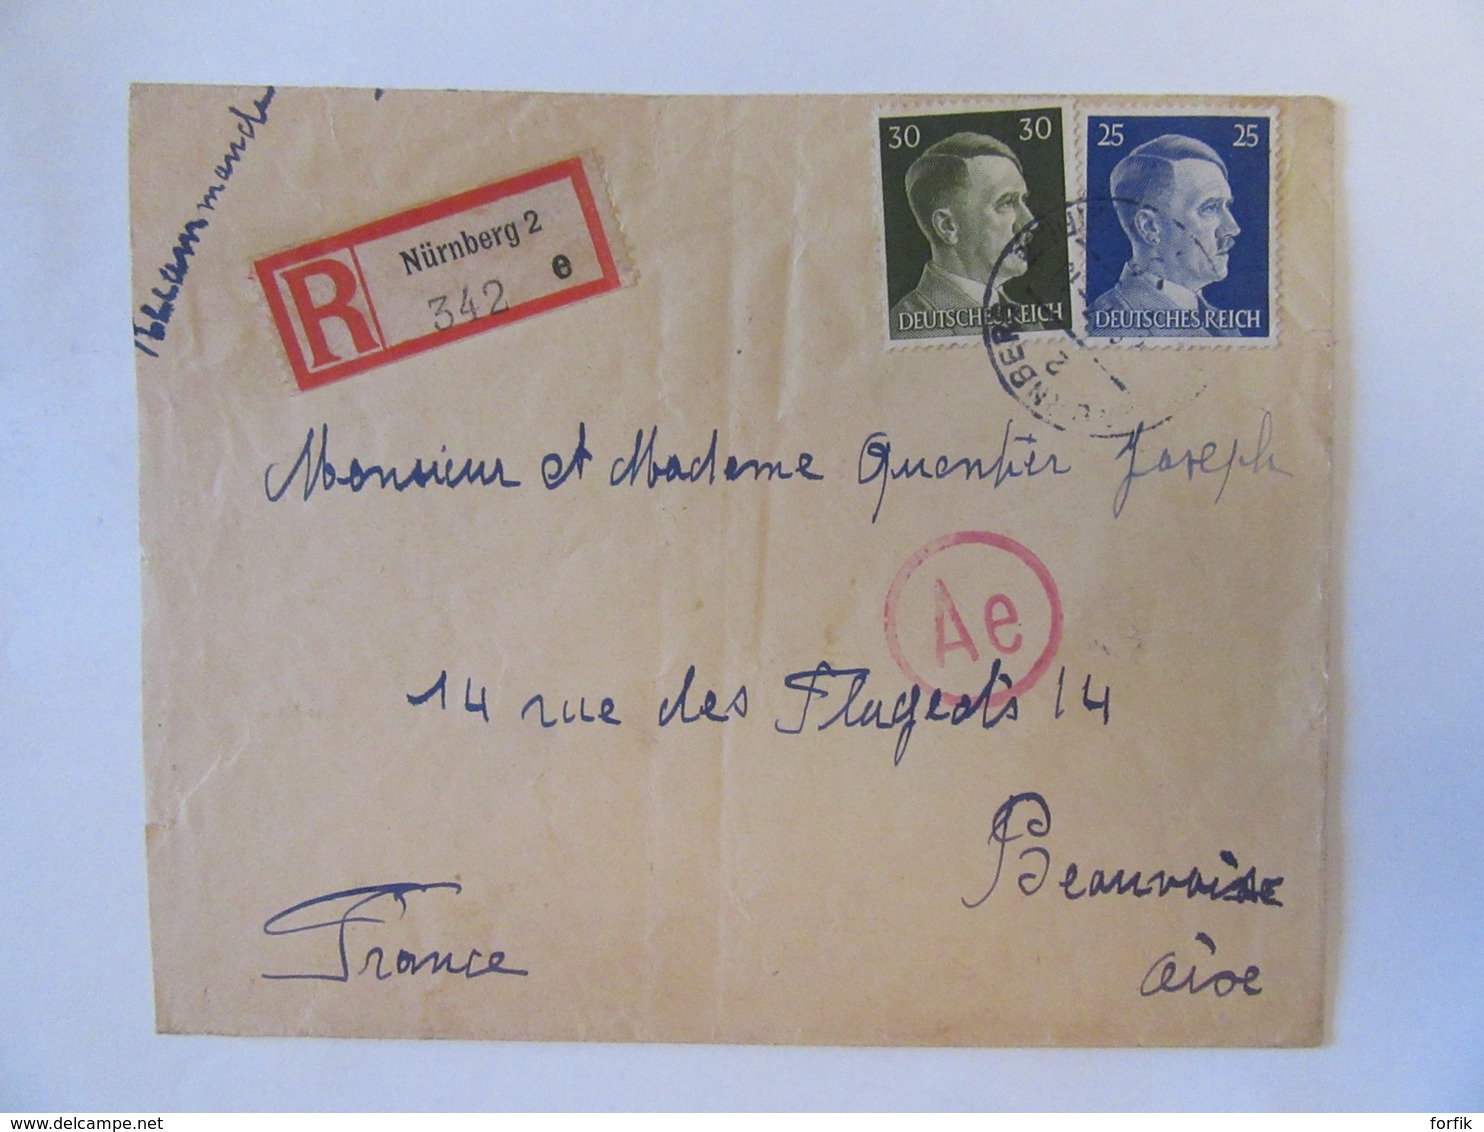 Guerre 39-45 - 3 Enveloppes provenant du Camp de Nürnberg (Nuremberg) vers Beauvais dont 2 Recommandés, 1943